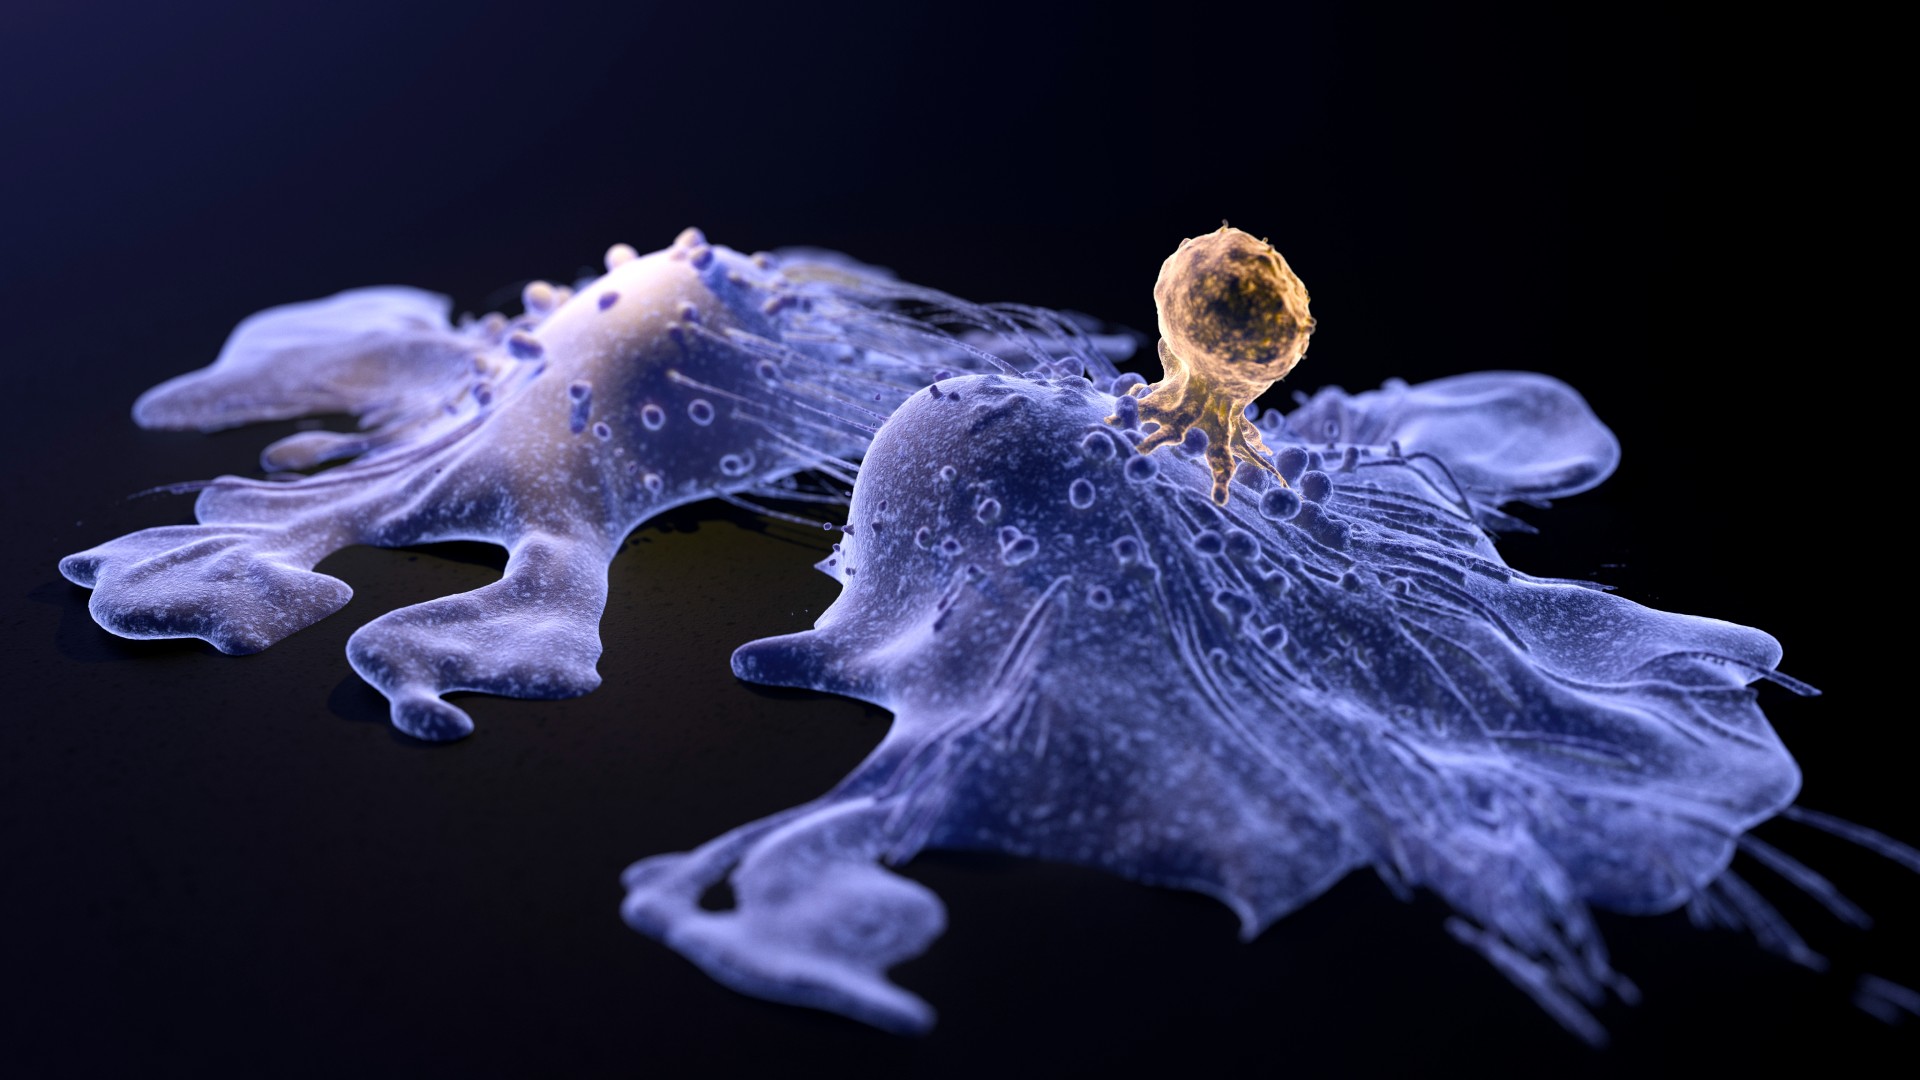 Медицинская иллюстрация двух раковых клеток фиолетового цвета на черном фоне.  Одна из раковых клеток (справа) подвергается атаке Т-клетки (золото).